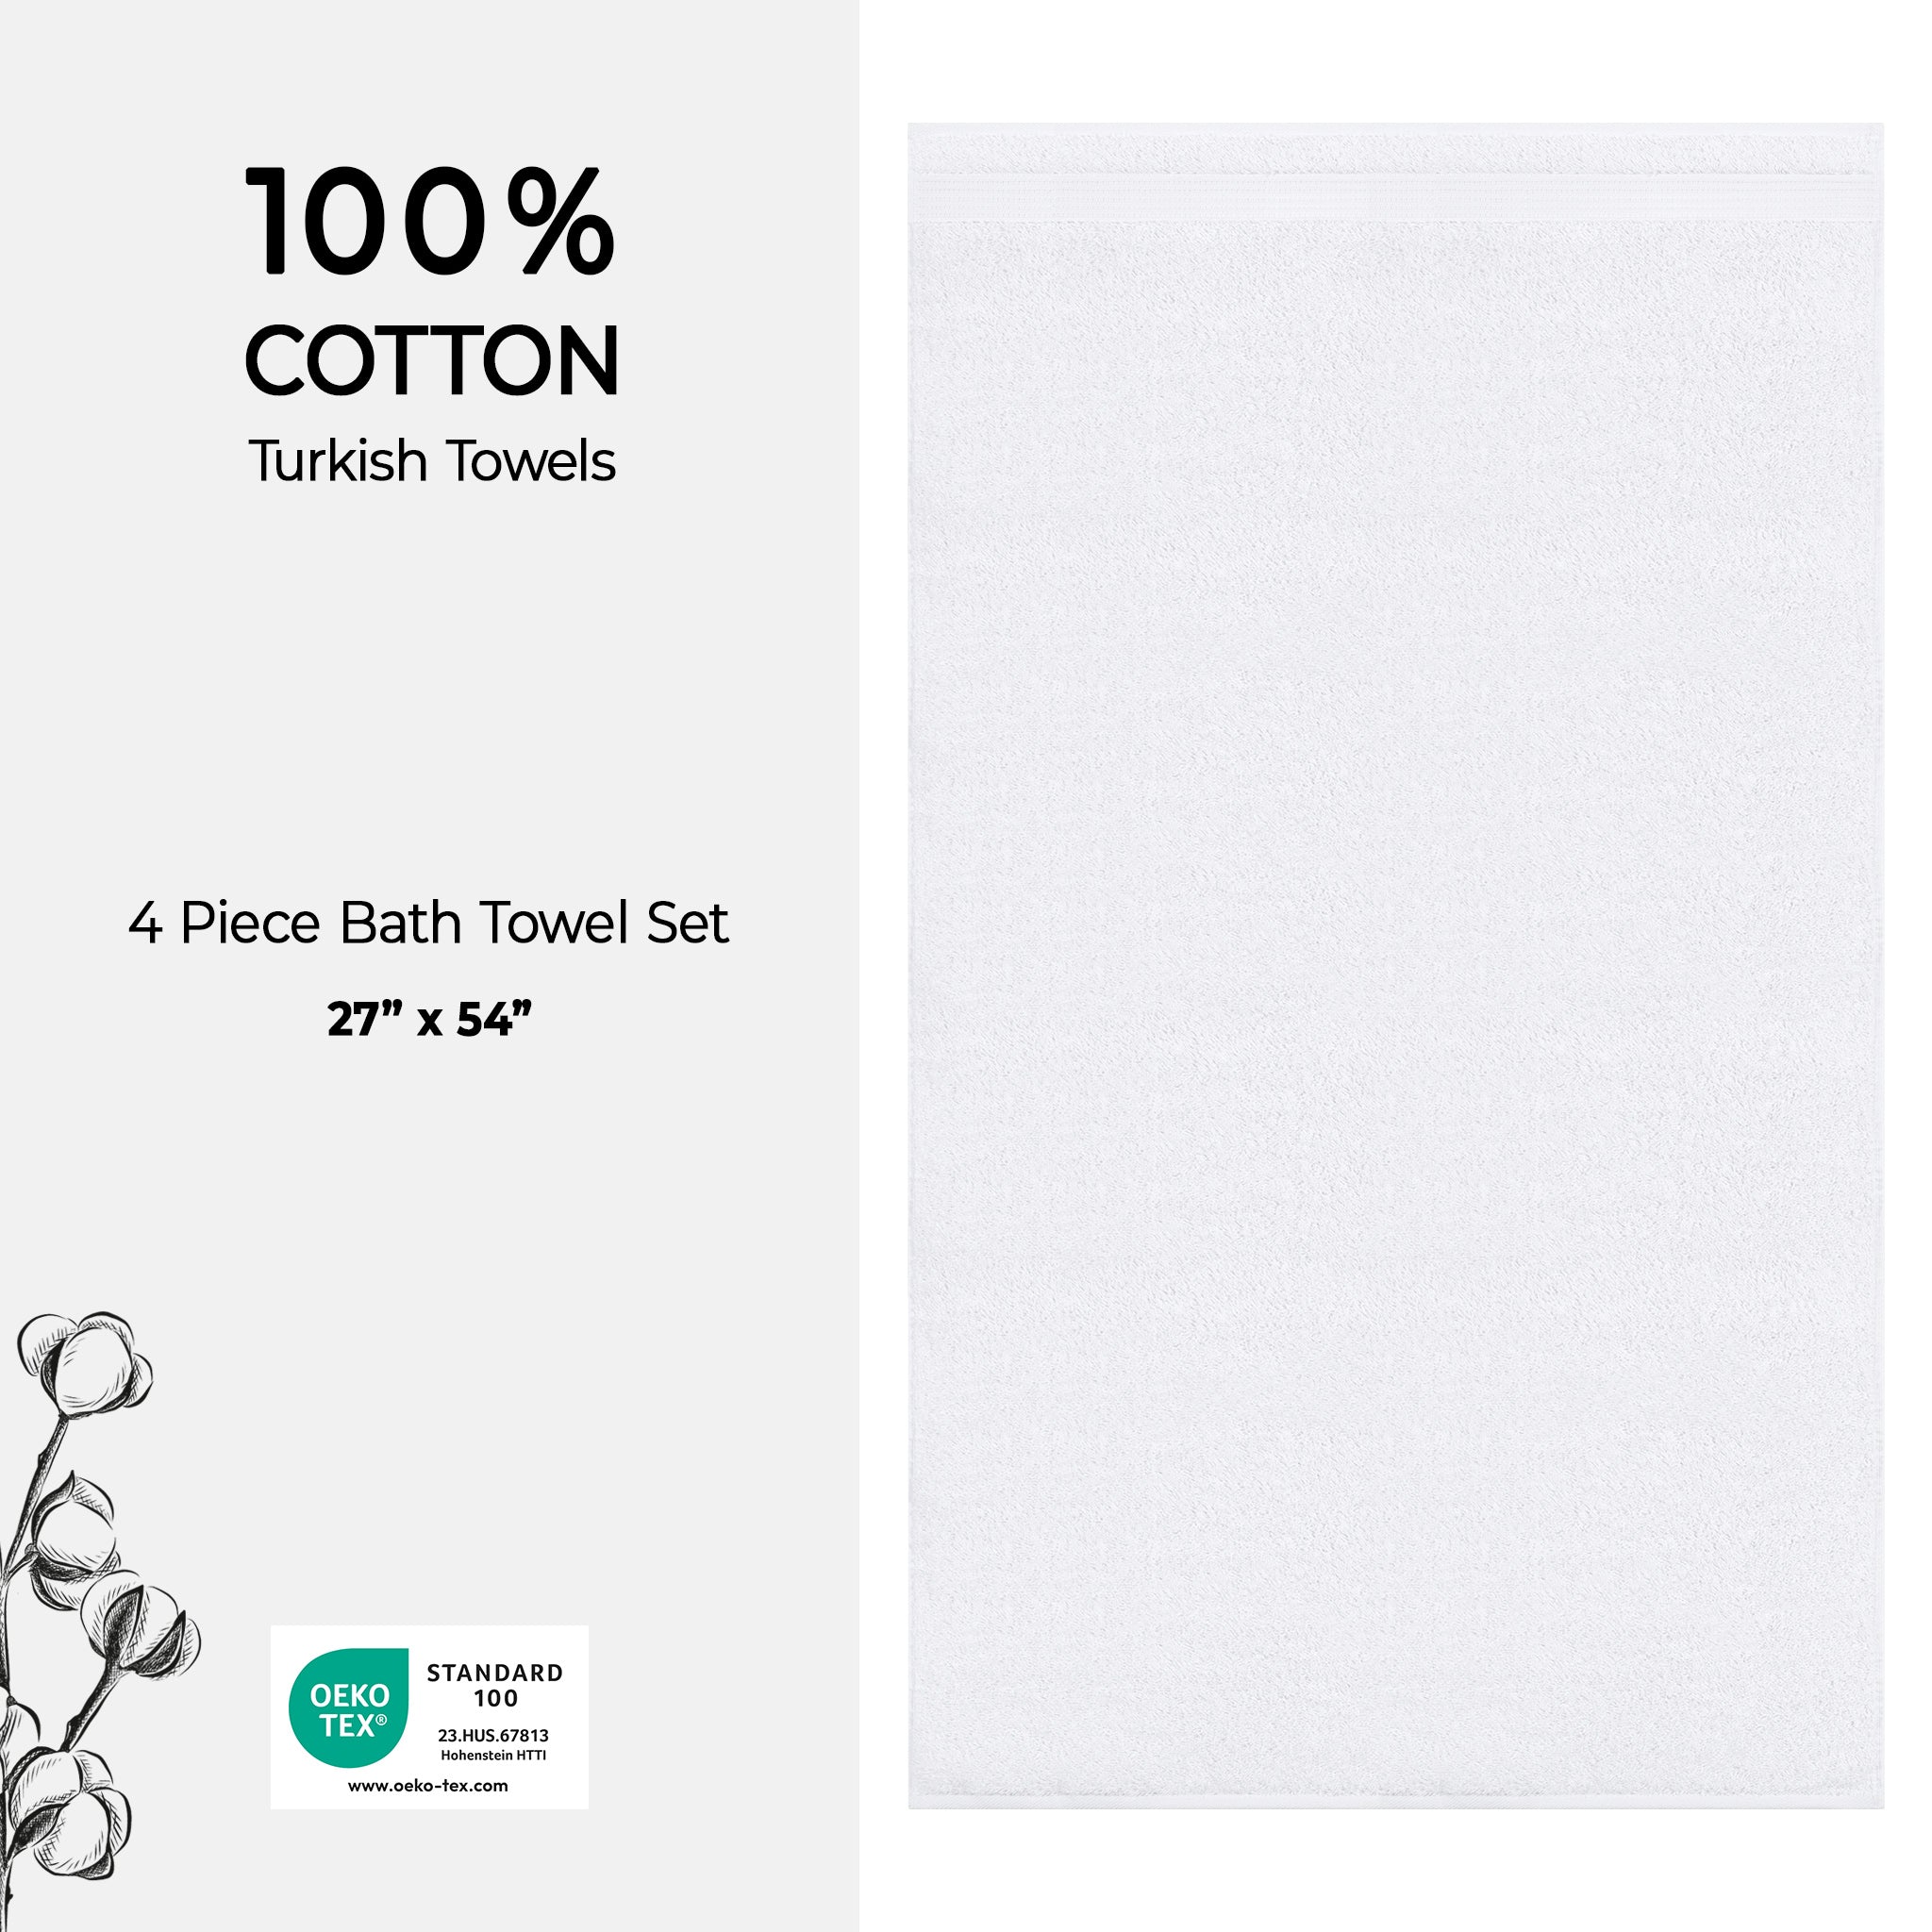 American Soft Linen Bekos 100% Cotton Turkish Towels, 4 Piece Bath Towel Set -turquoise-white-04